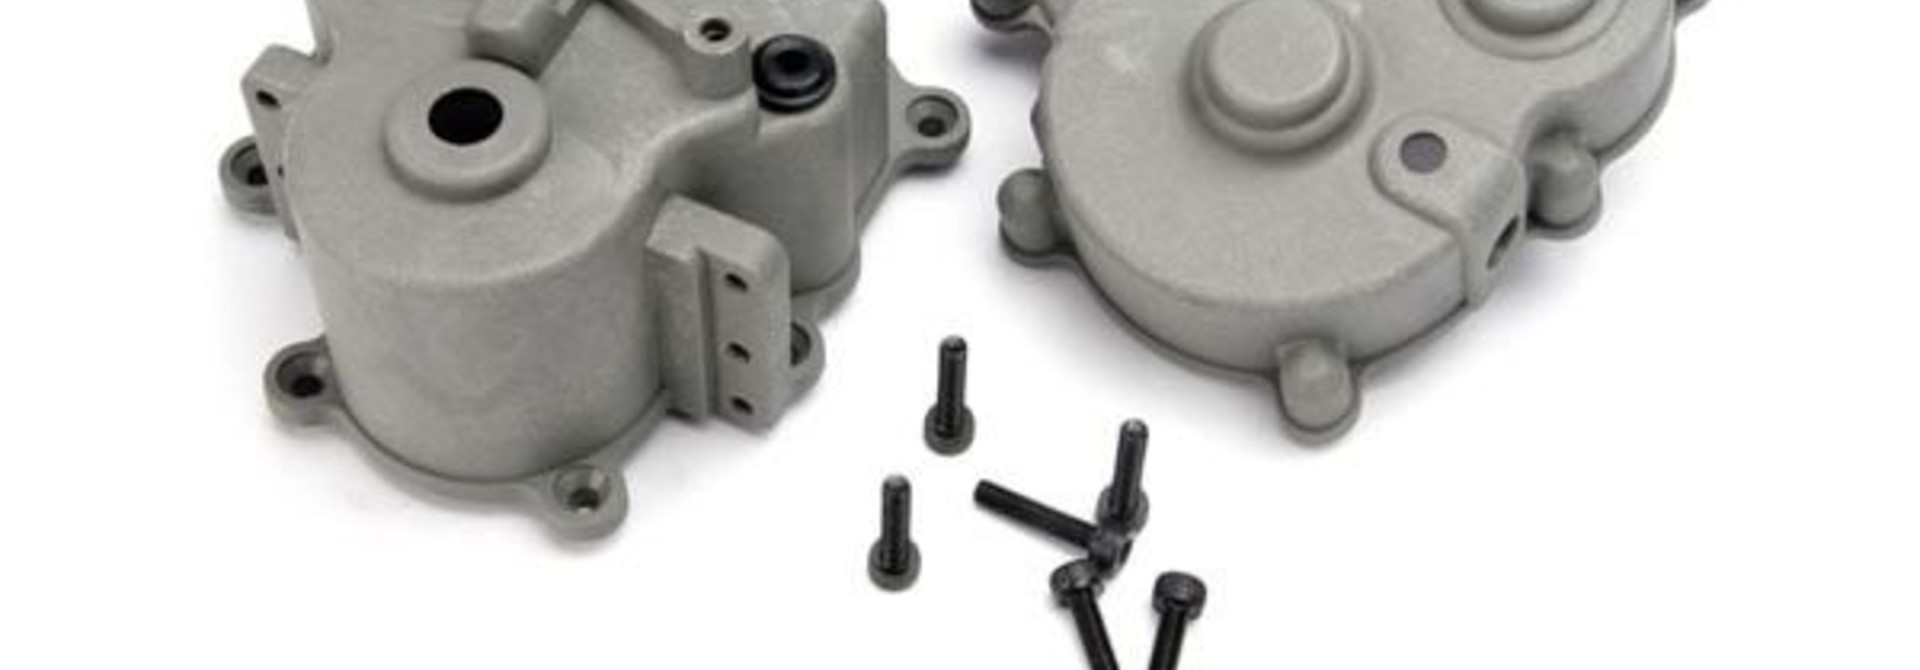 Gearbox halves (front & rear)/ rubber access plug/ shift det, TRX5181